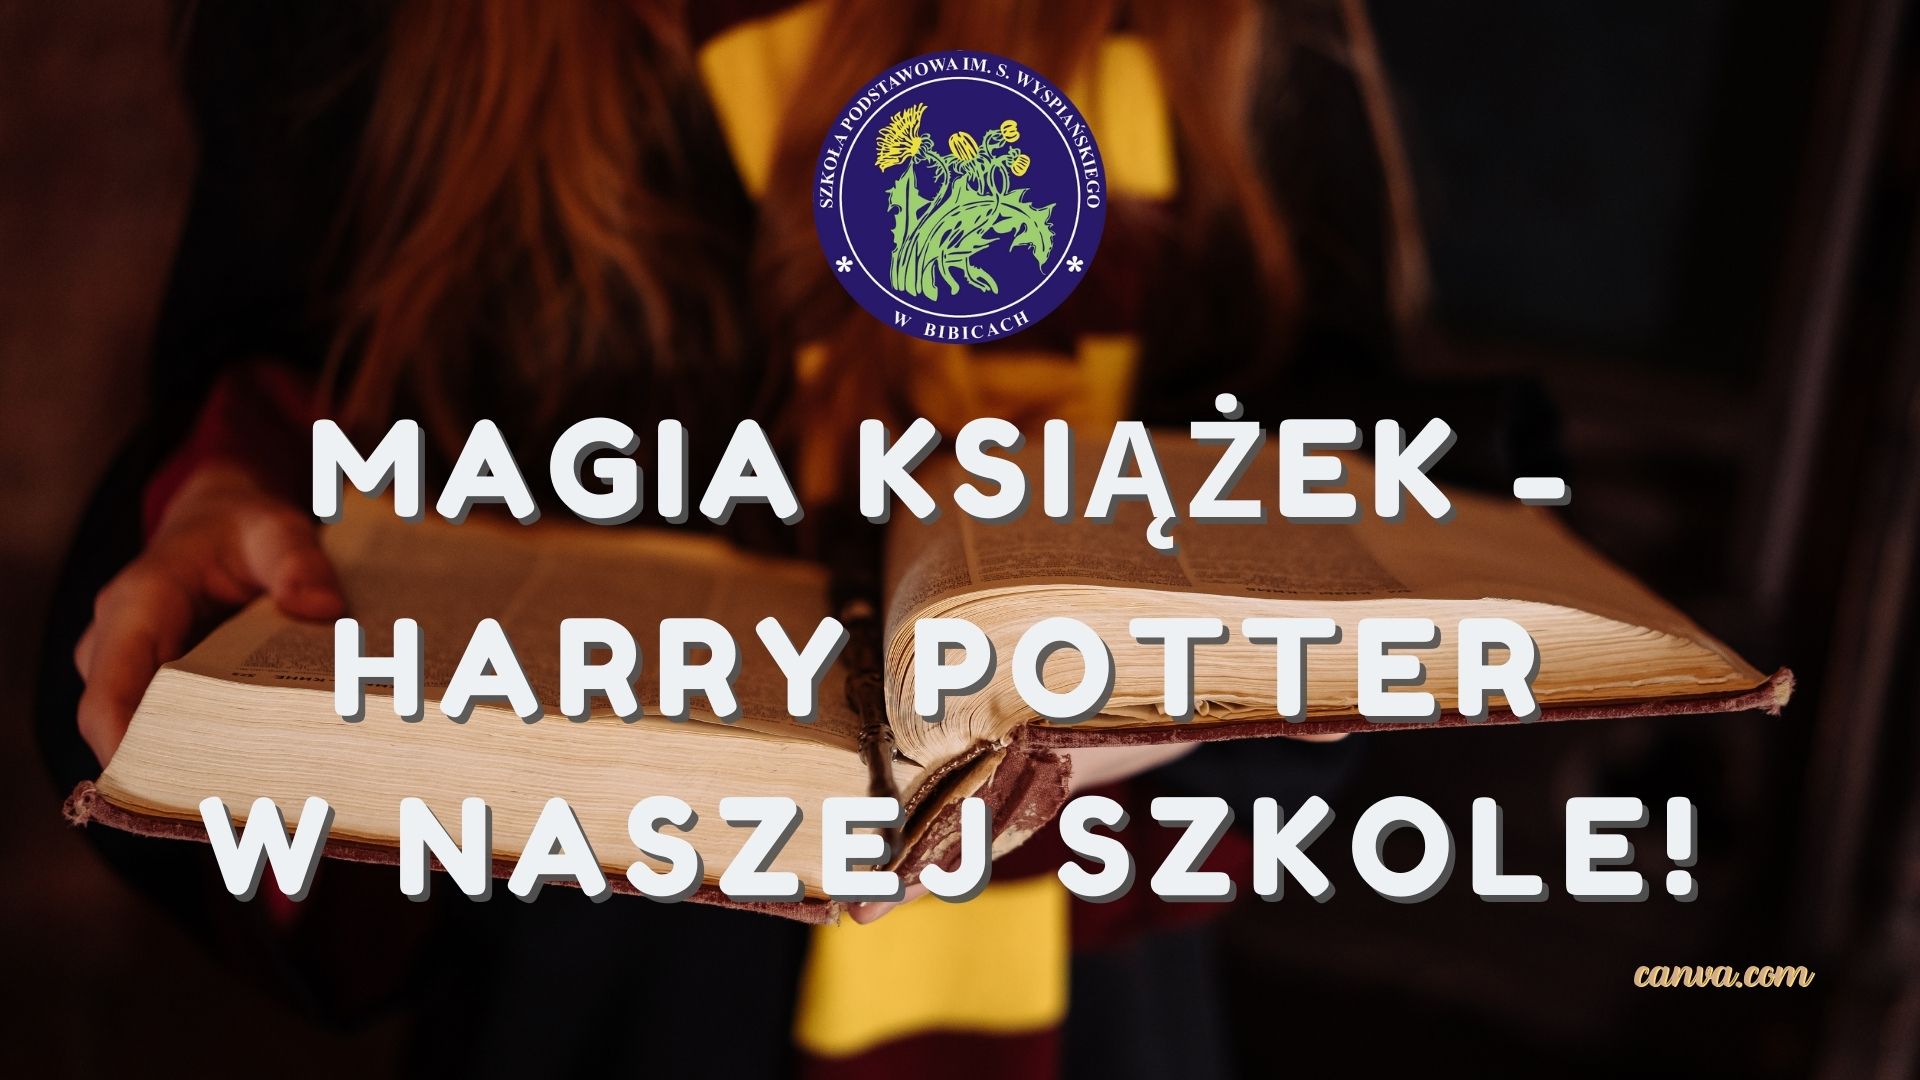 Magia książek - Harry Potter w naszej szkole!